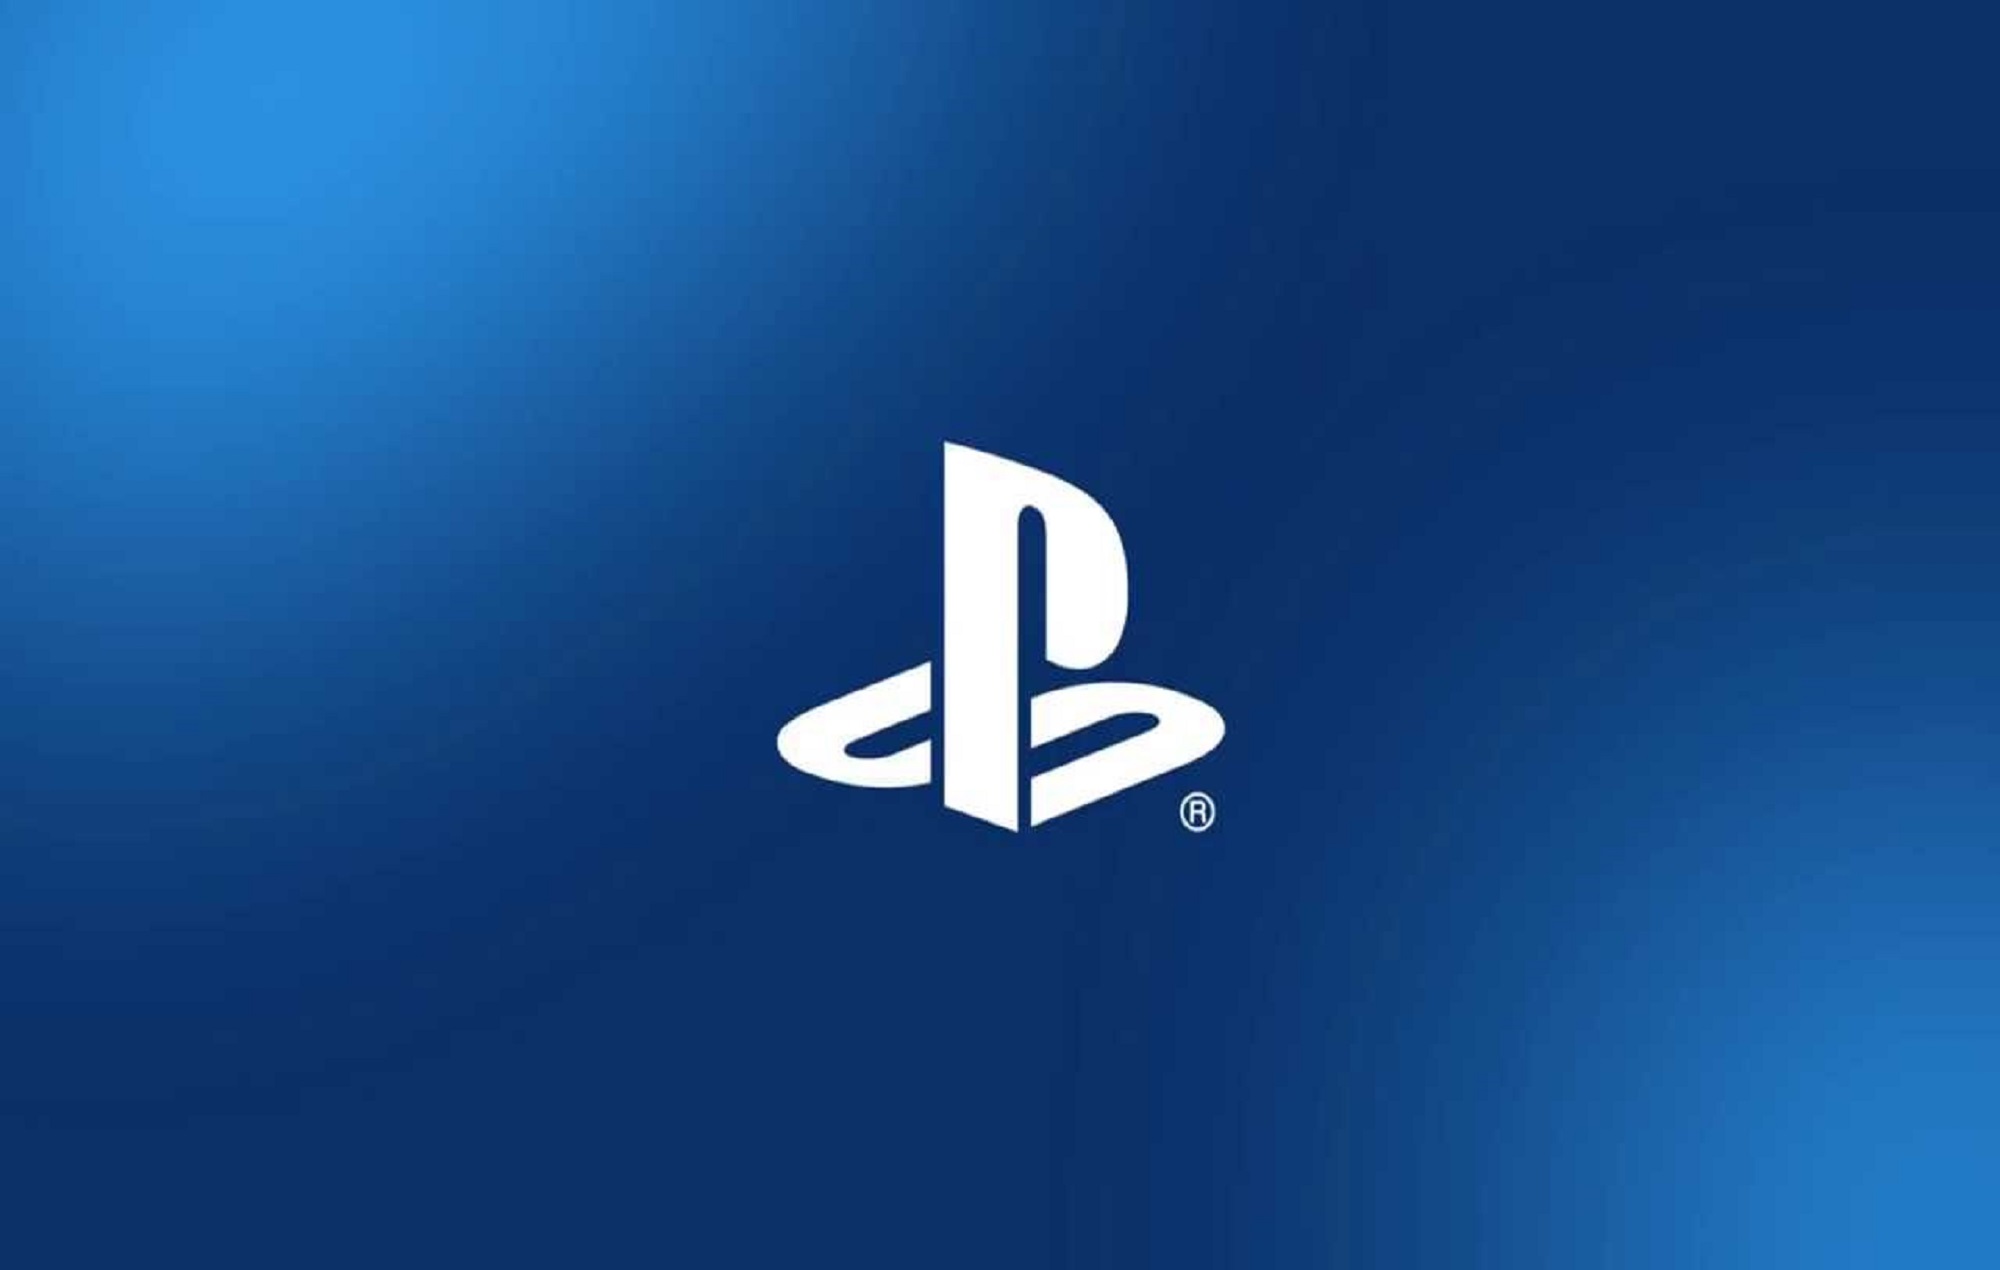 Tohru Okada, compositor del icónico sonido del logotipo de PlayStation, ha fallecido